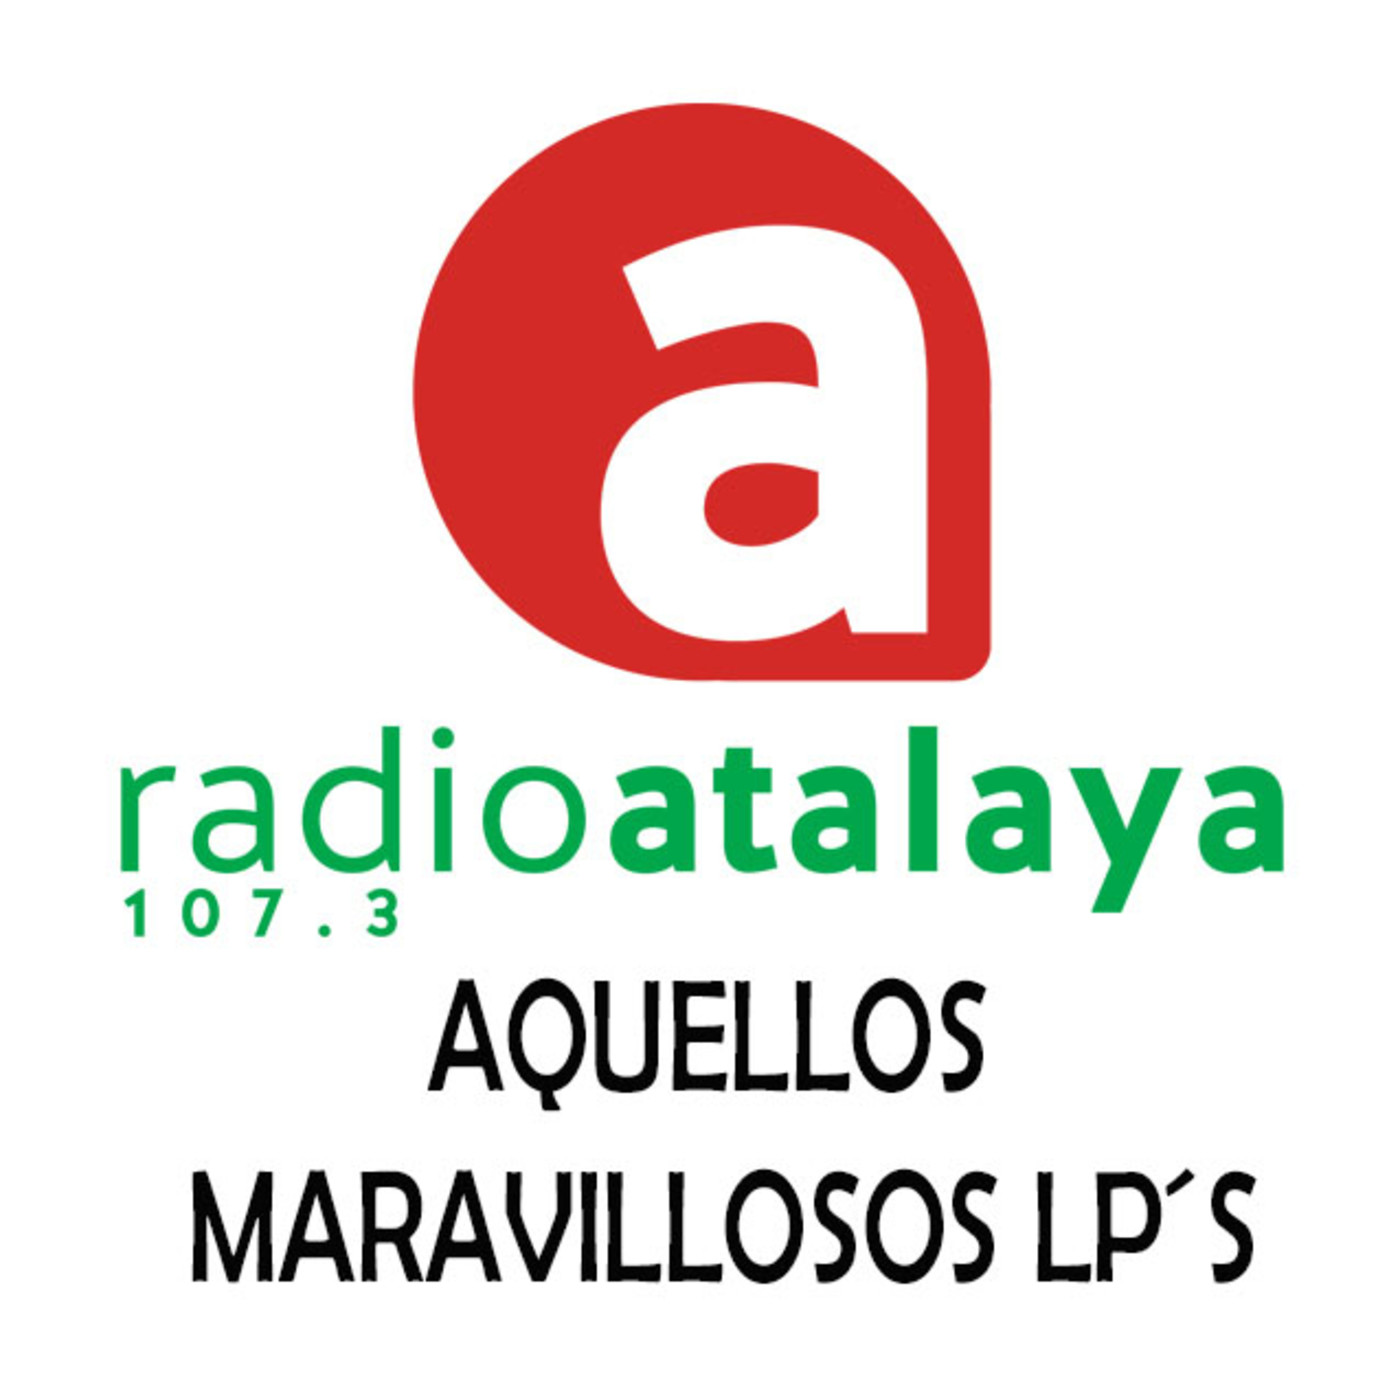 AQUELLOS MARAVILLOSOS LPS: Novedades rockeras de los últimos meses